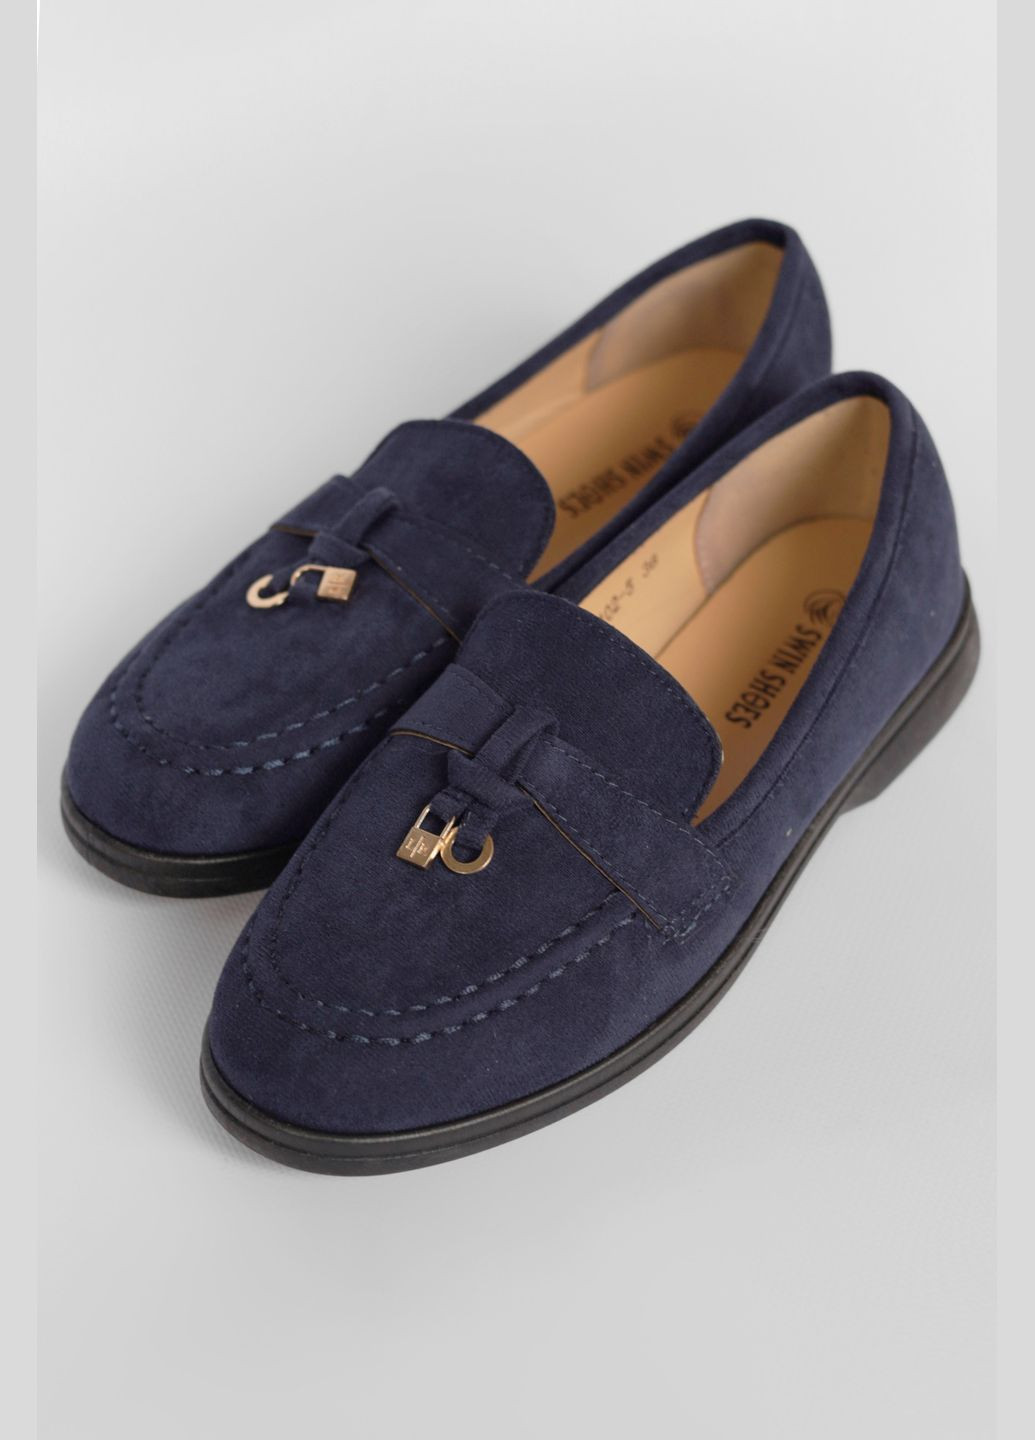 Туфли-лоферы женские темно-синего цвета Let's Shop с цепочками